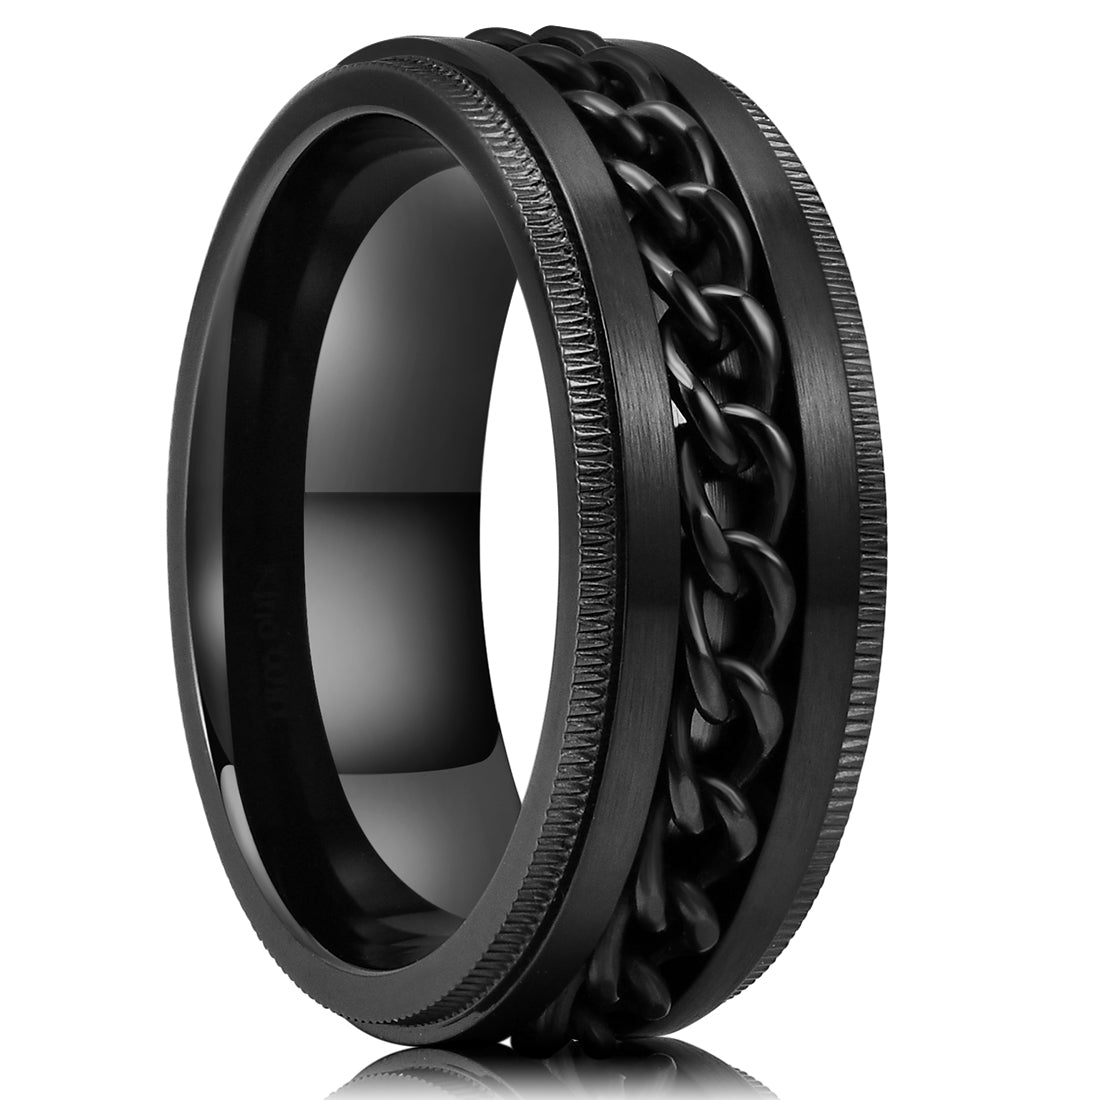 Spinner Men's Wedding Celtic Weave Ring ( Sizes 4 5 6 7 8 9 10 11